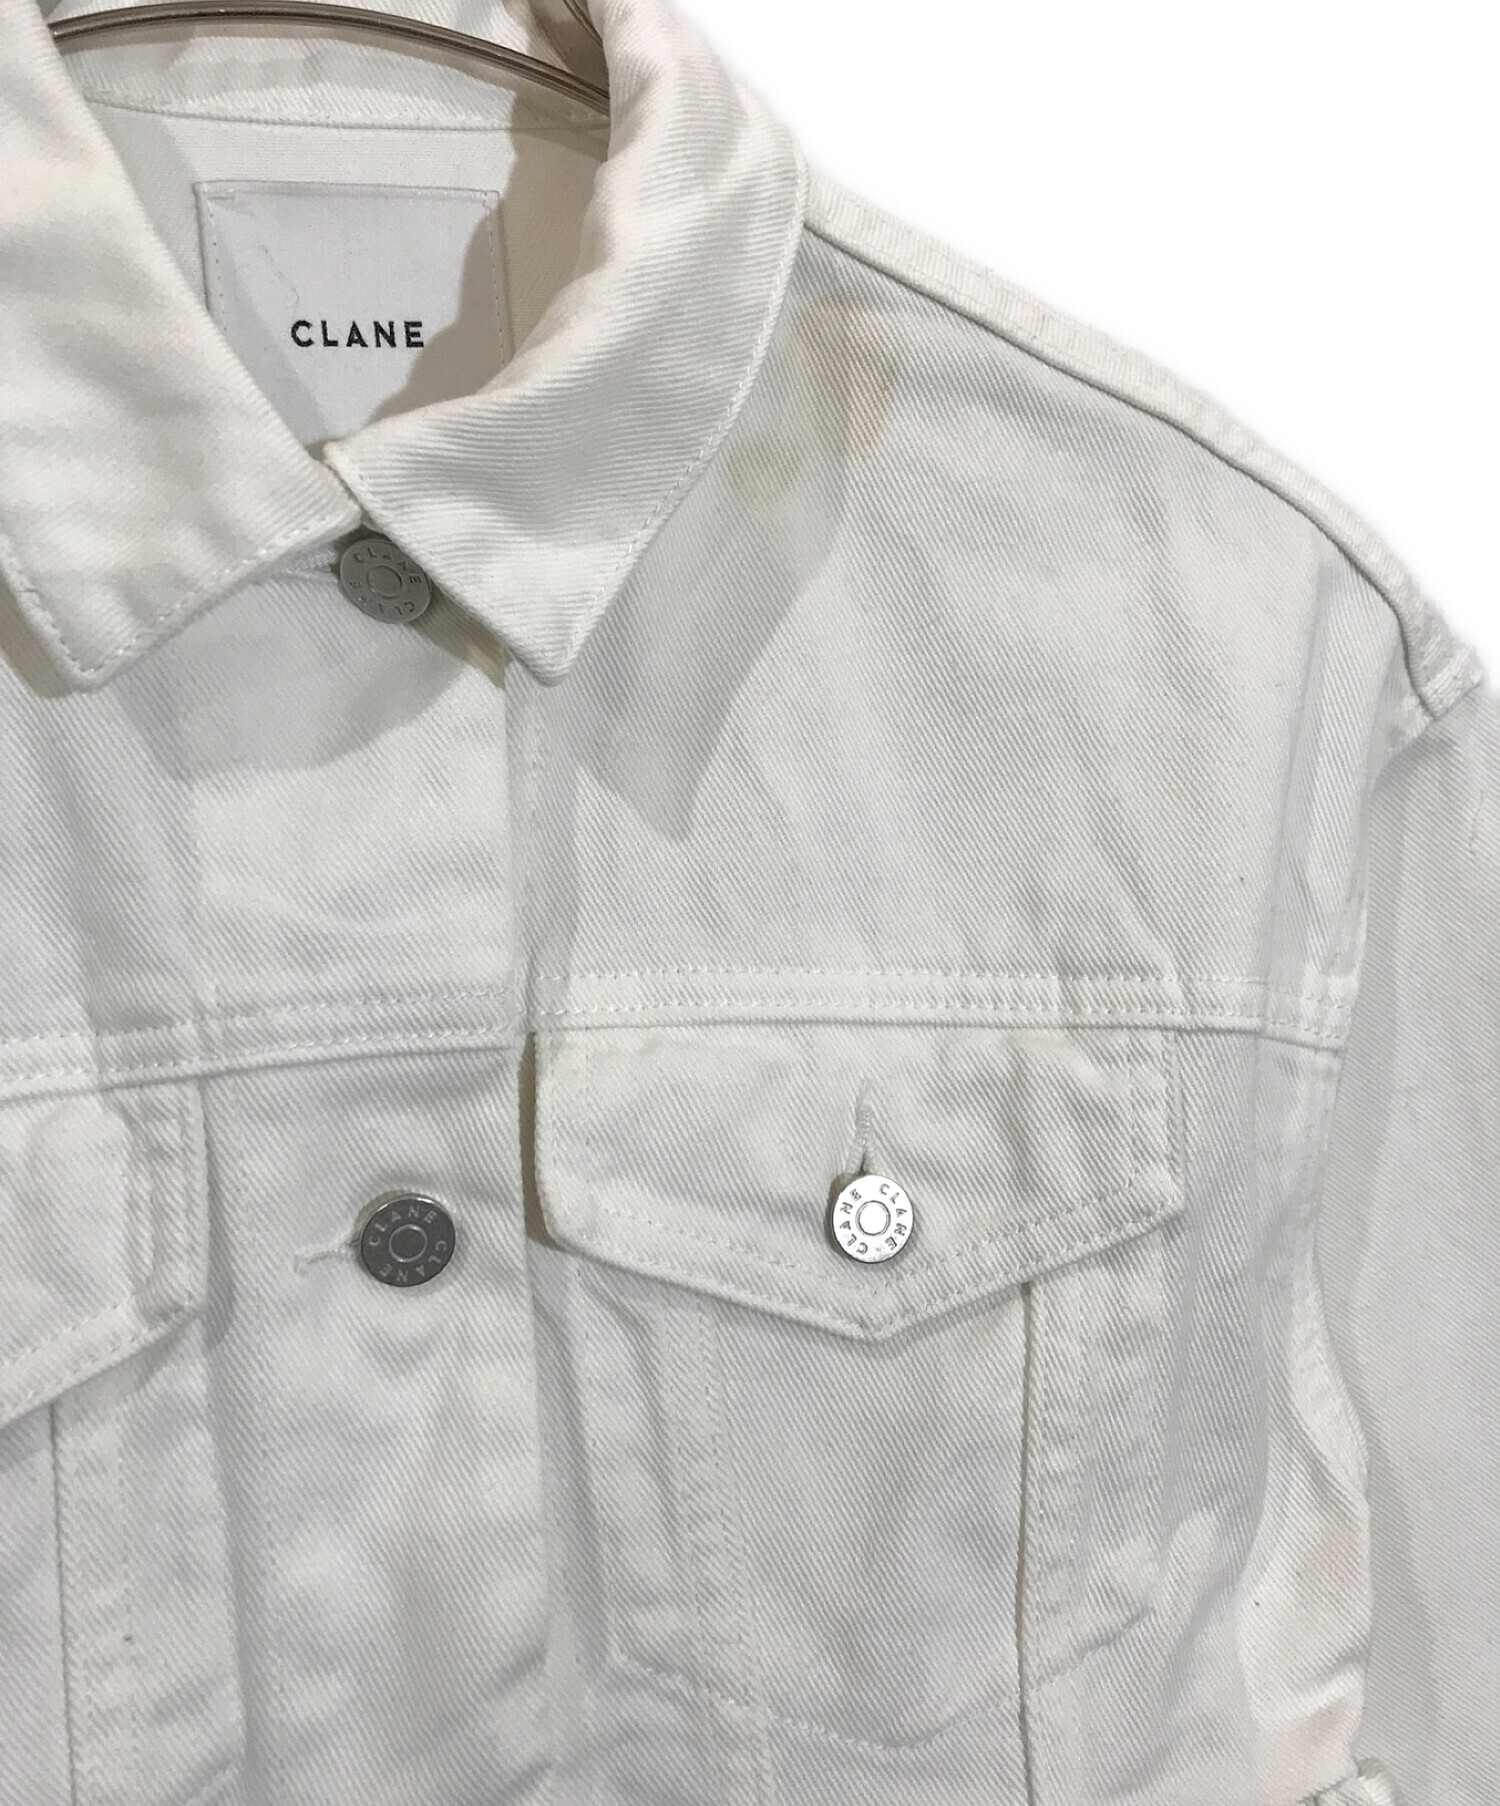 CLANE (クラネ) エンブロイダリーデニムジャケット ホワイト サイズ:S